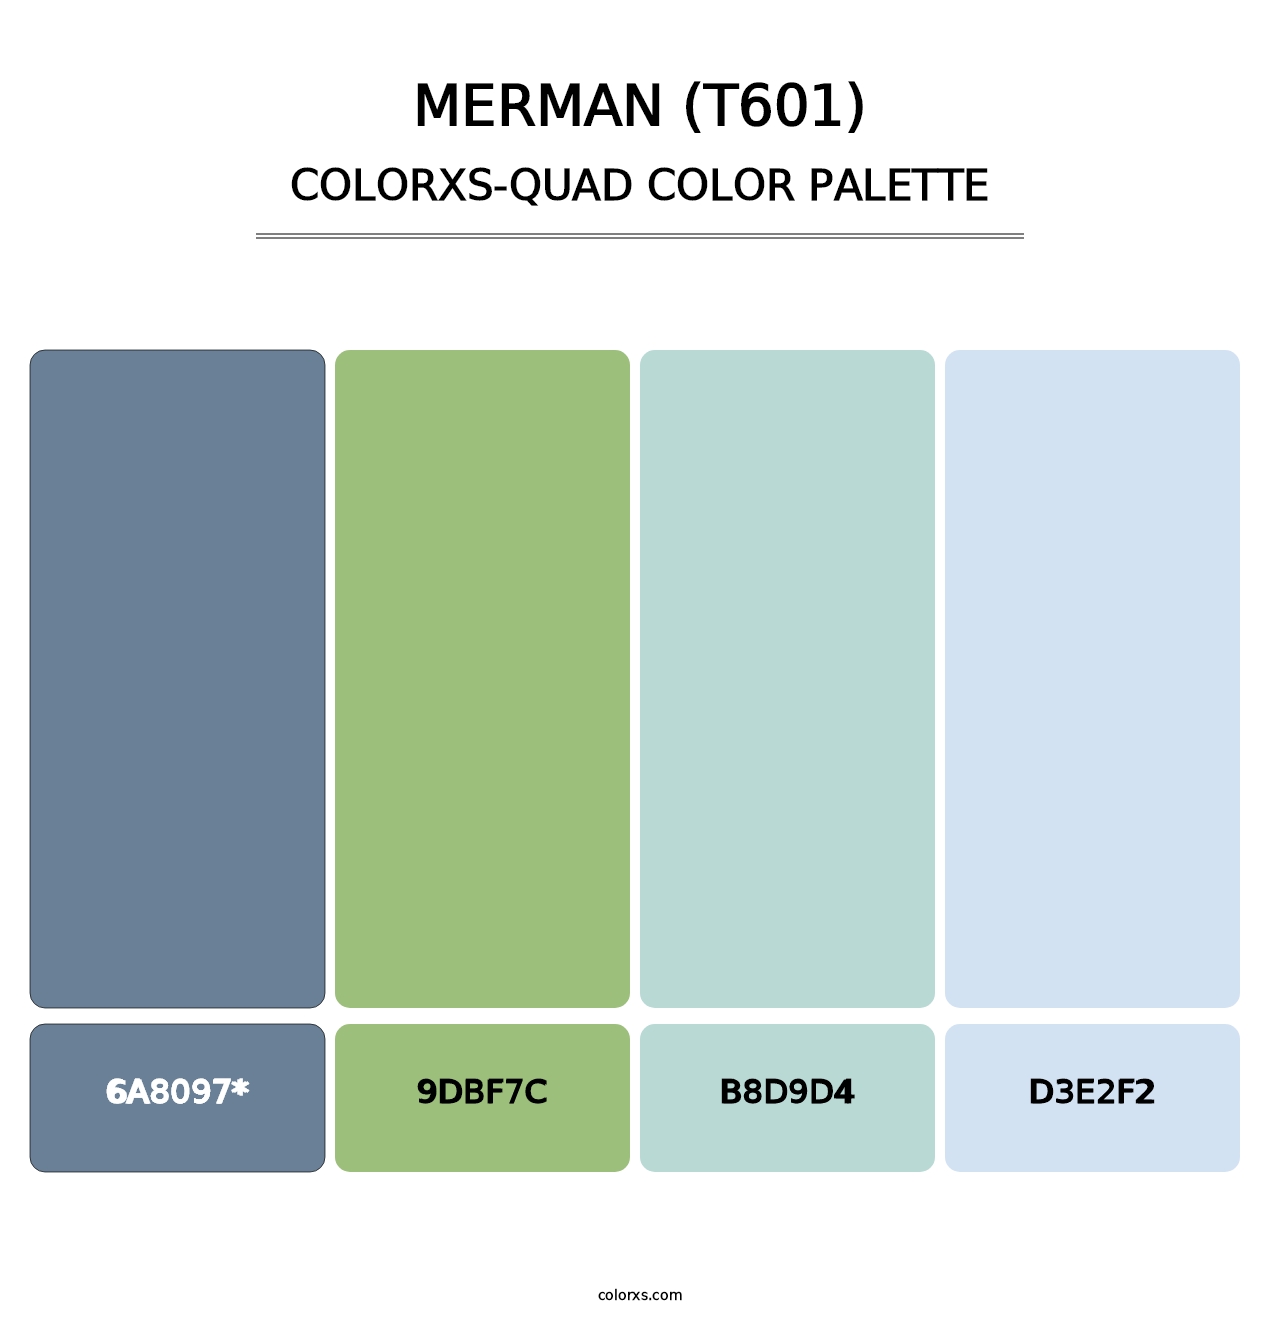 Merman (T601) - Colorxs Quad Palette